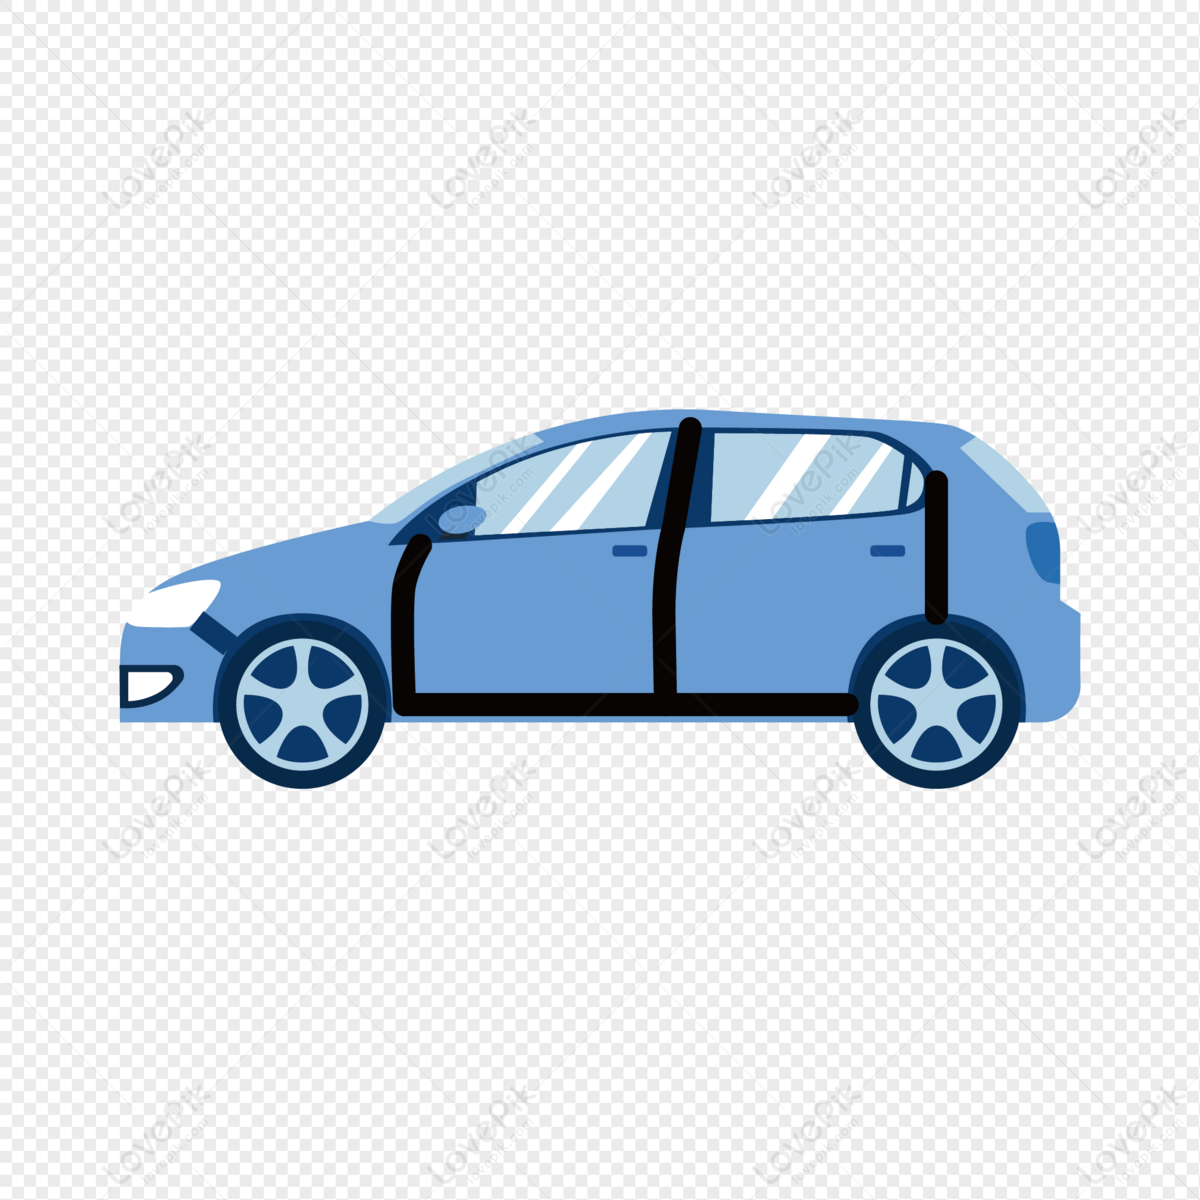 Hình ảnh PNG xe ô tô miễn phí: Miễn là bạn đam mê vẽ tranh, bạn sẽ yêu thích thư viện hình ảnh PNG miễn phí về các mẫu xe hơi. Đây là một nguồn tài nguyên tuyệt vời để tạo nên các thiết kế tuyệt đẹp cho trang web, blog hoặc để in ấn.